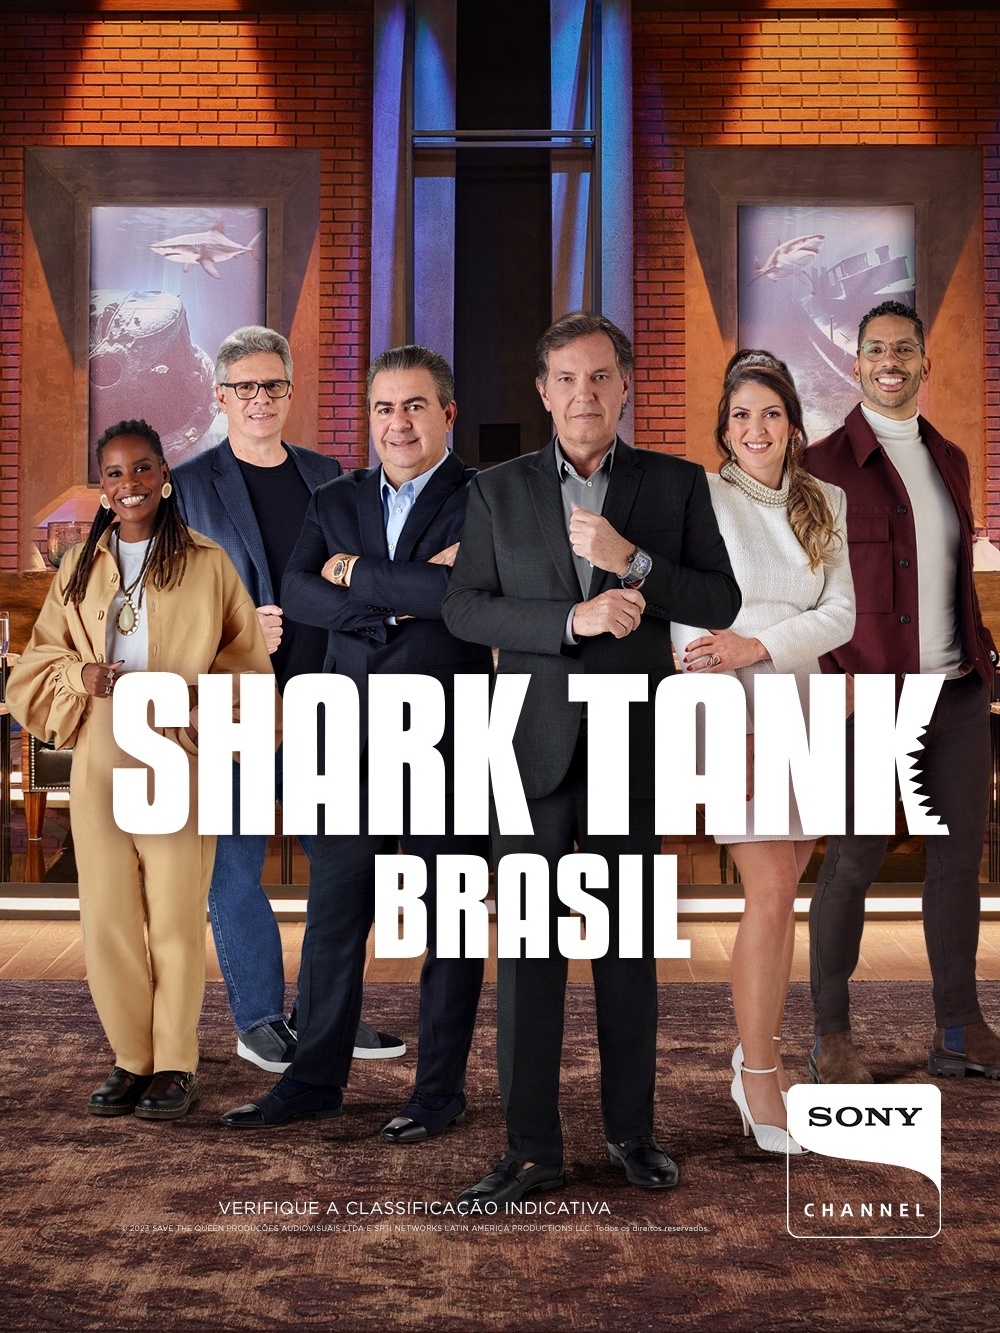 Carol Paiffer e Sony Pictures Television lançam no Brasil nova